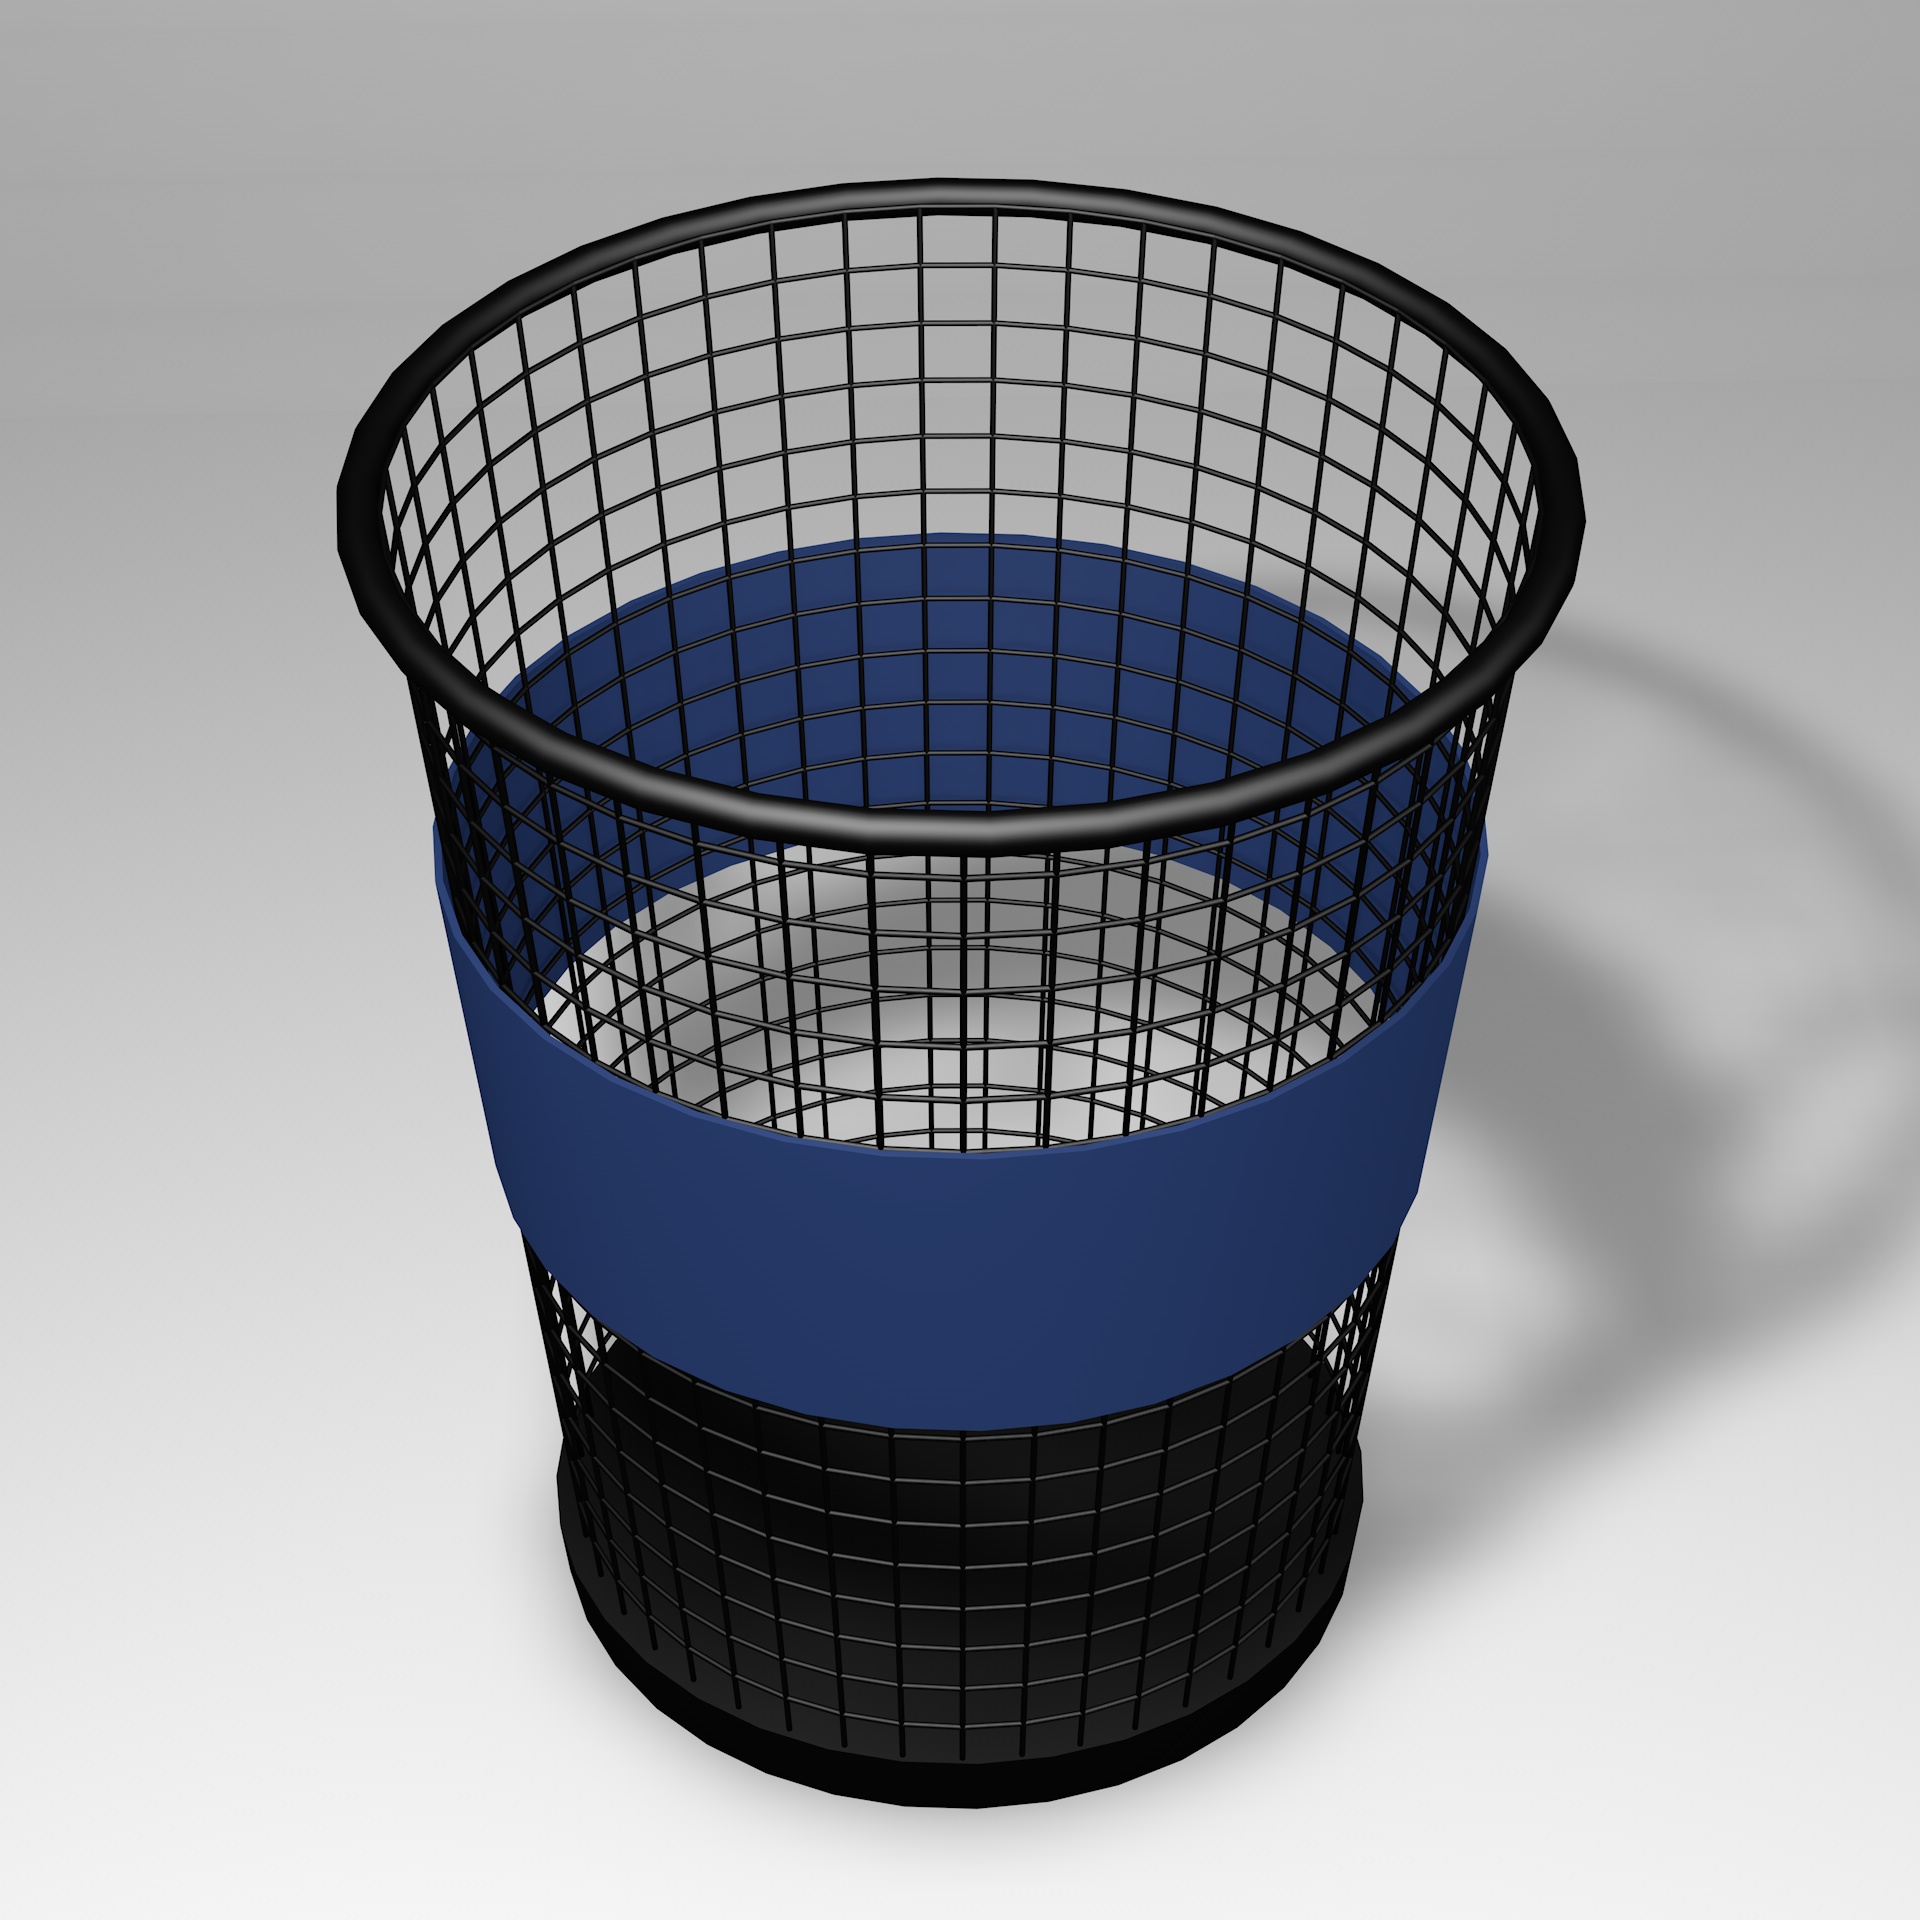 垃圾桶3d模型